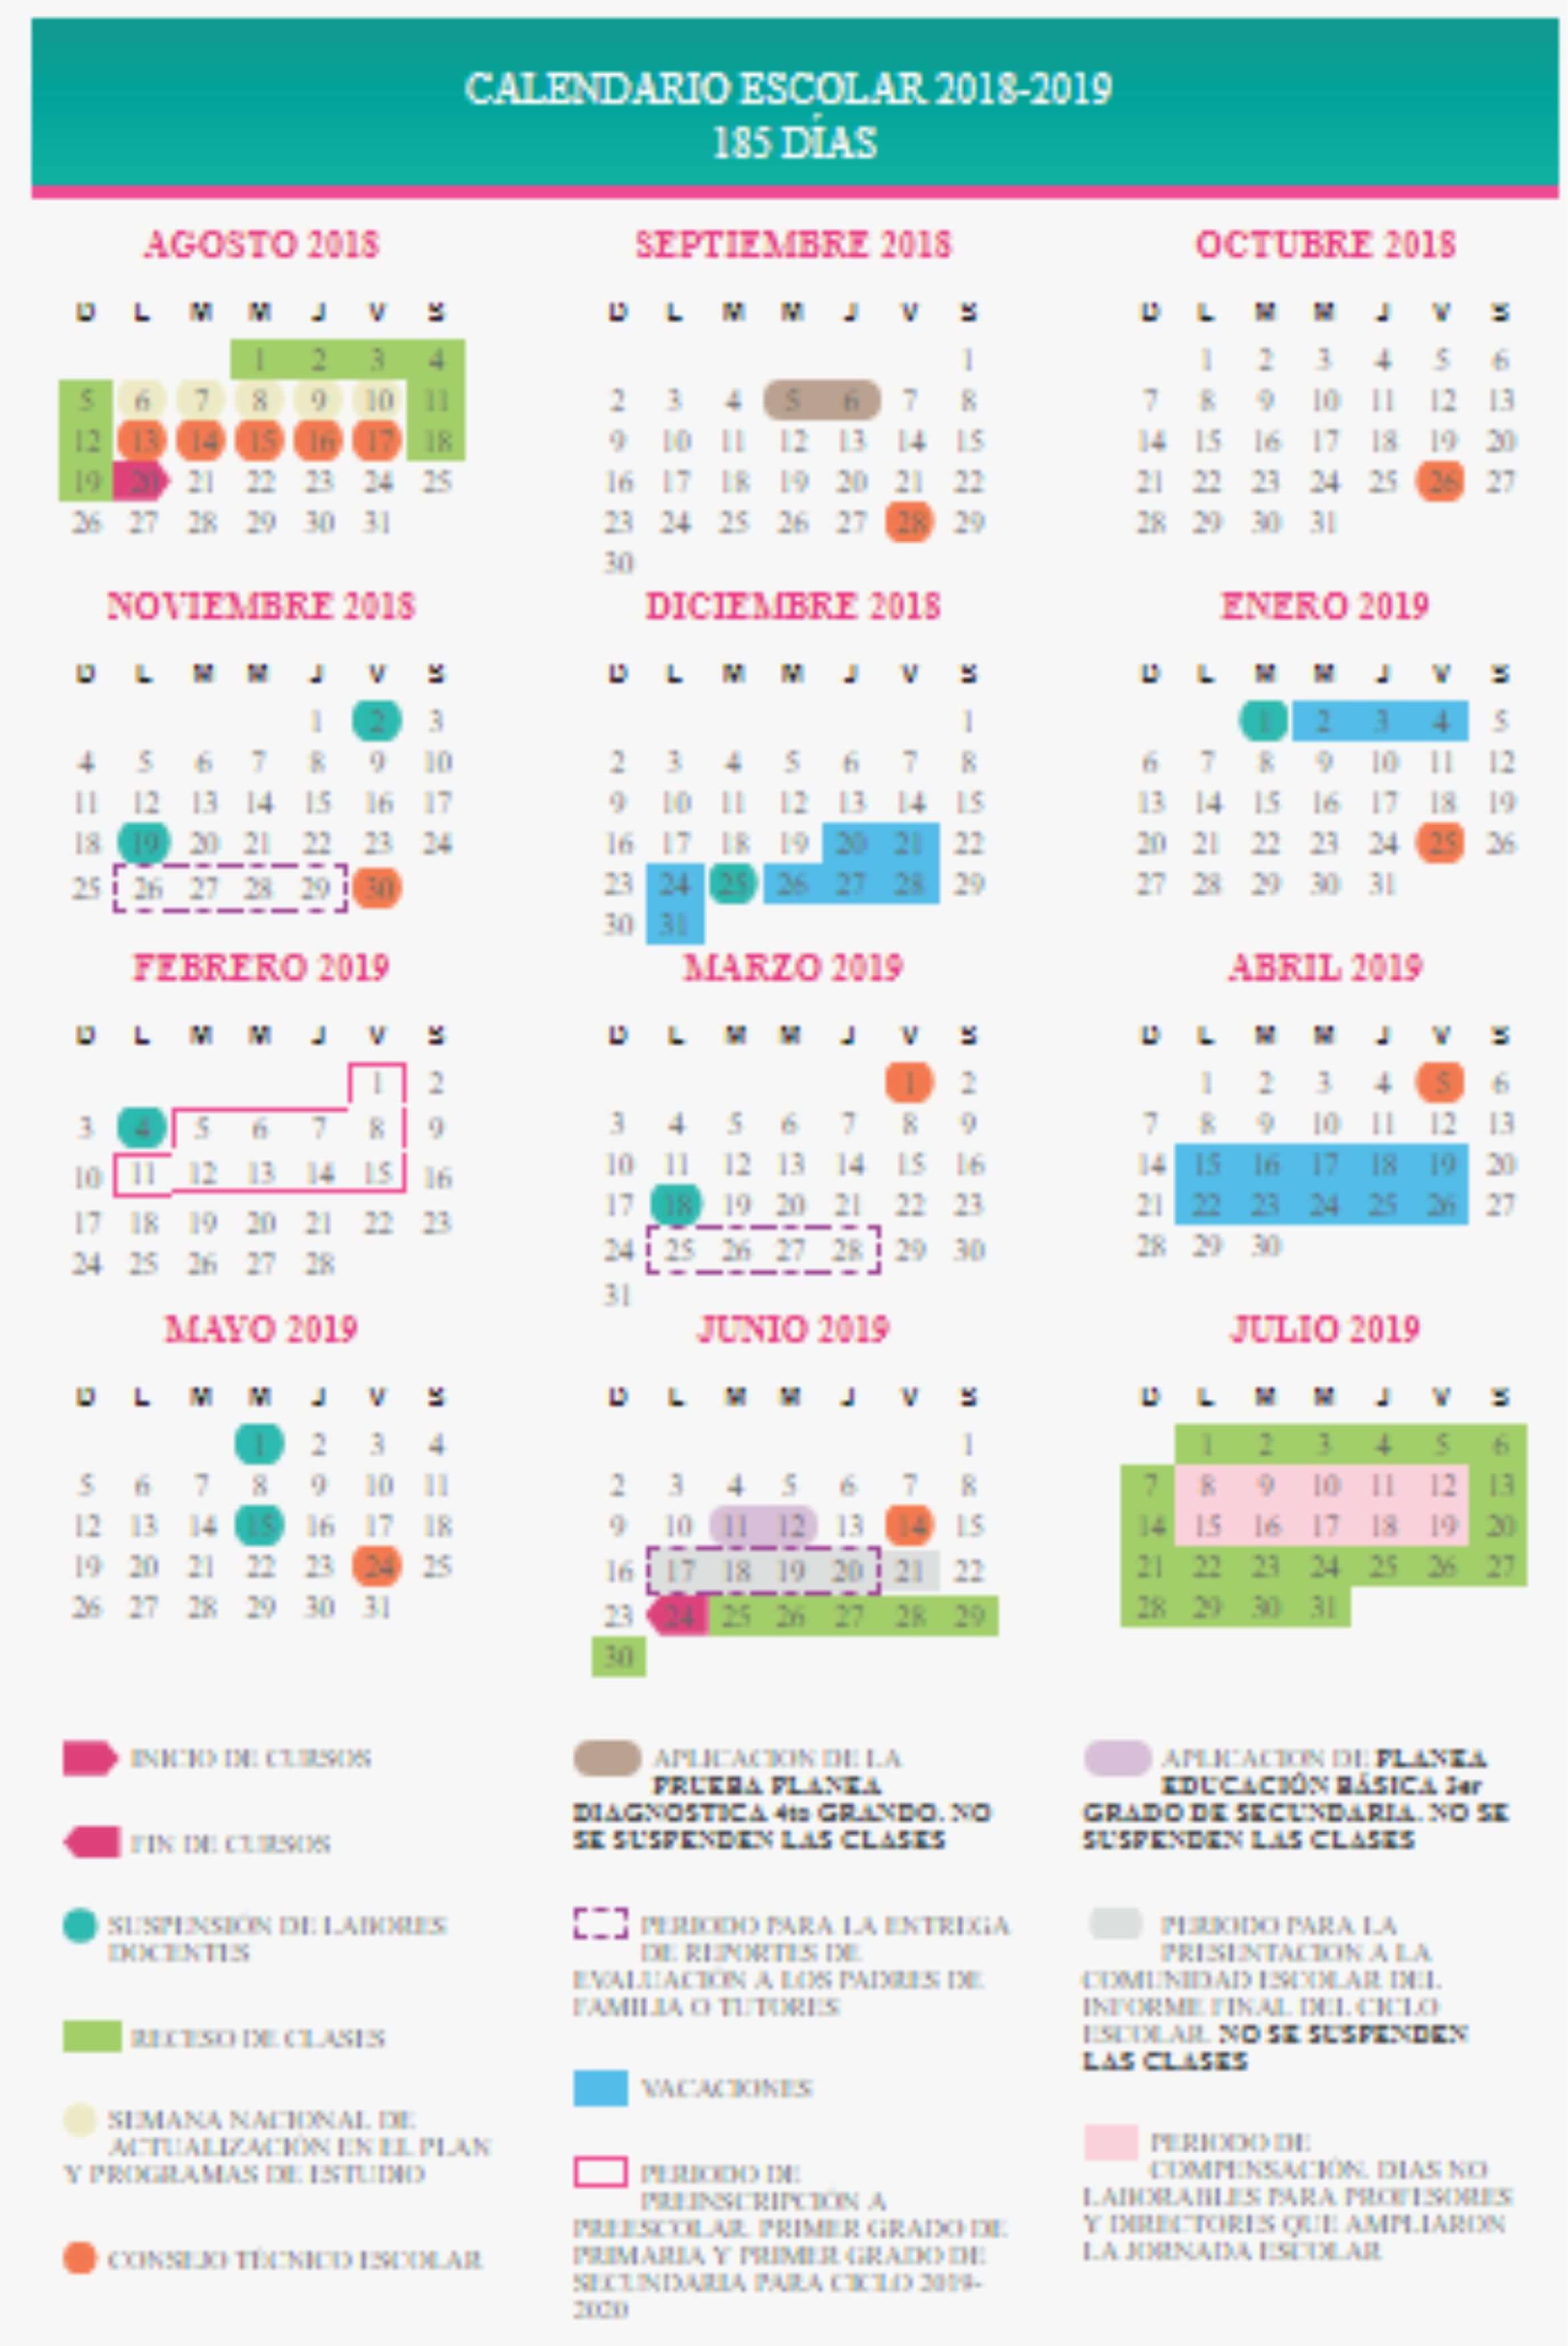 Calendario escolar 2018-2019 185